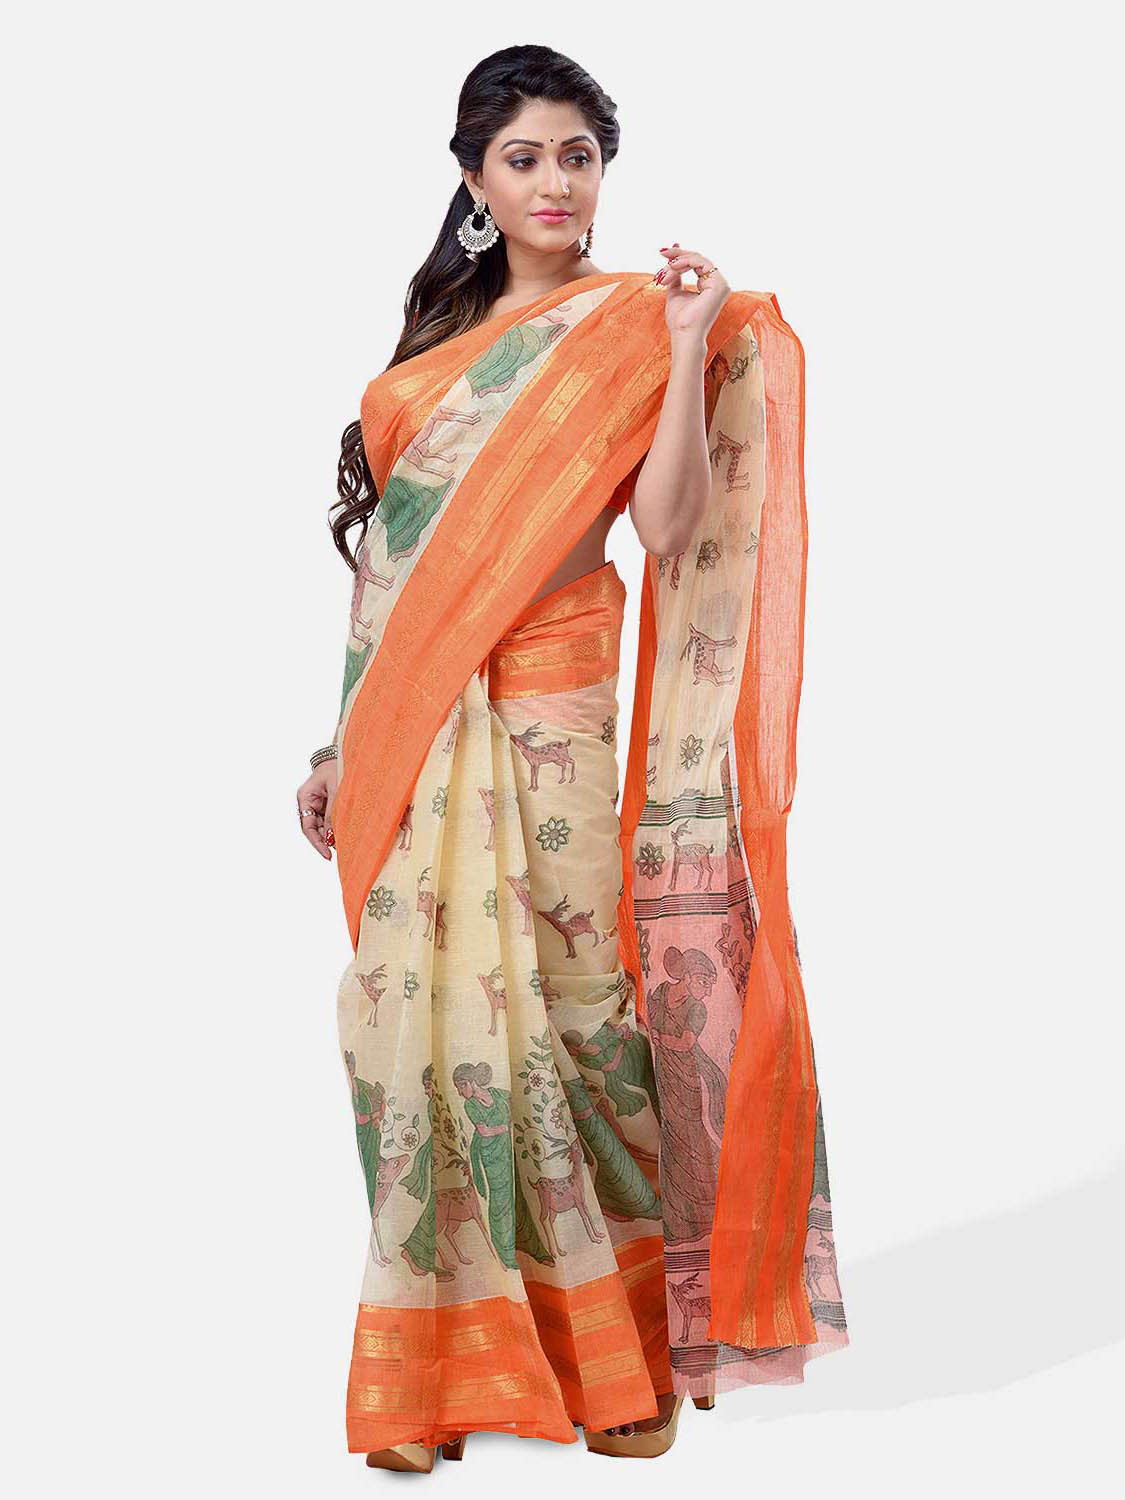 Bengal Printed cotton Tant Saree – Off White Sakuntala Printed Body With Light Work – Zori Work Border (Orange Off-White)